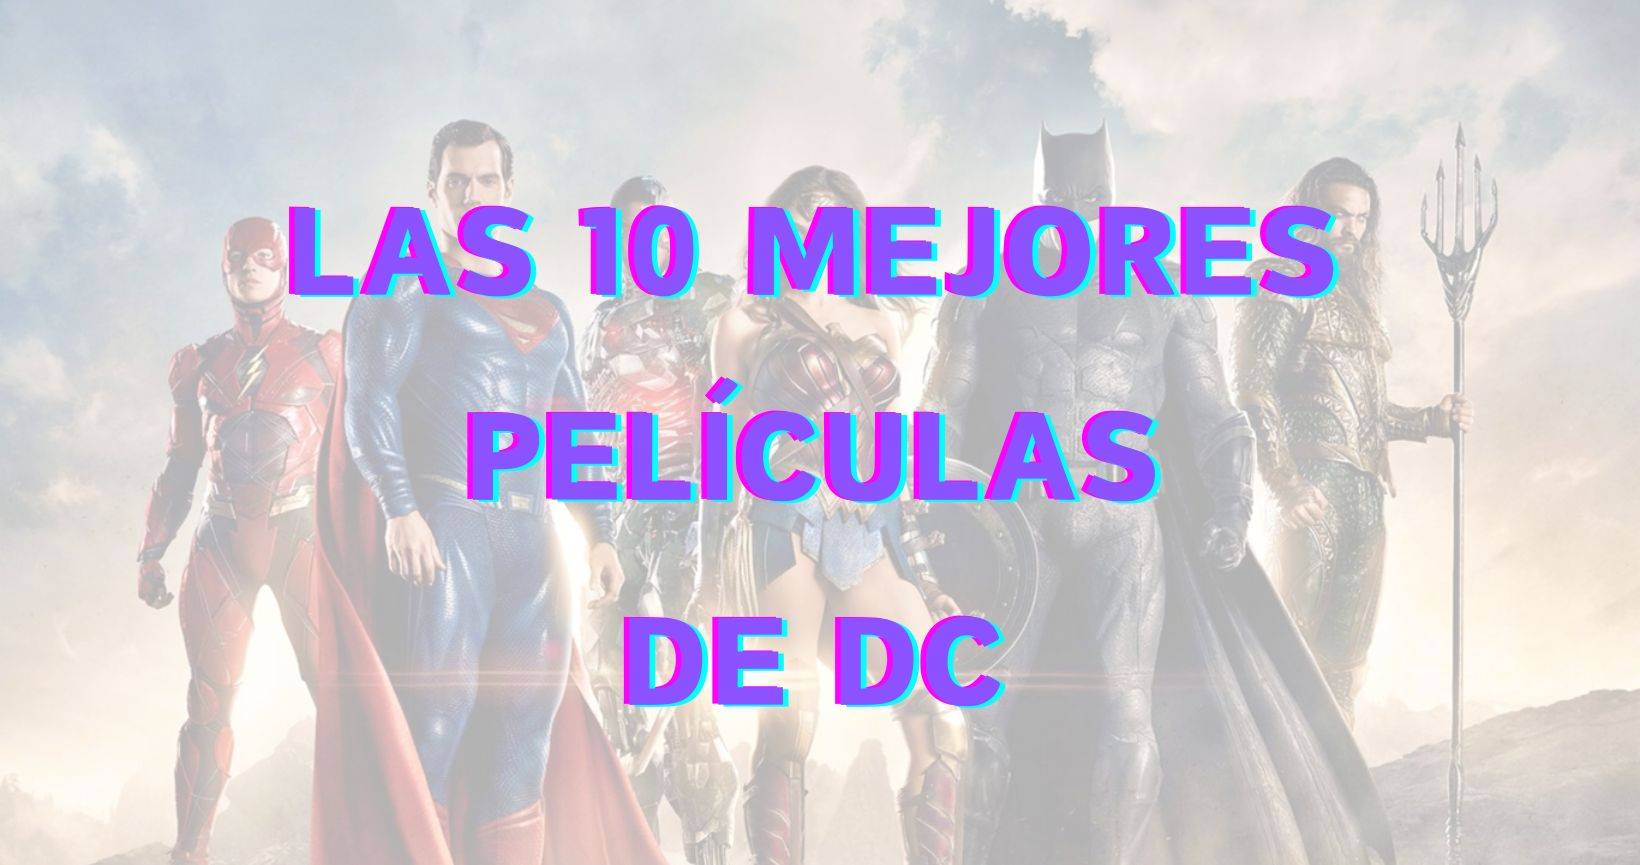 Las 10 mejores películas de DC según IMDb